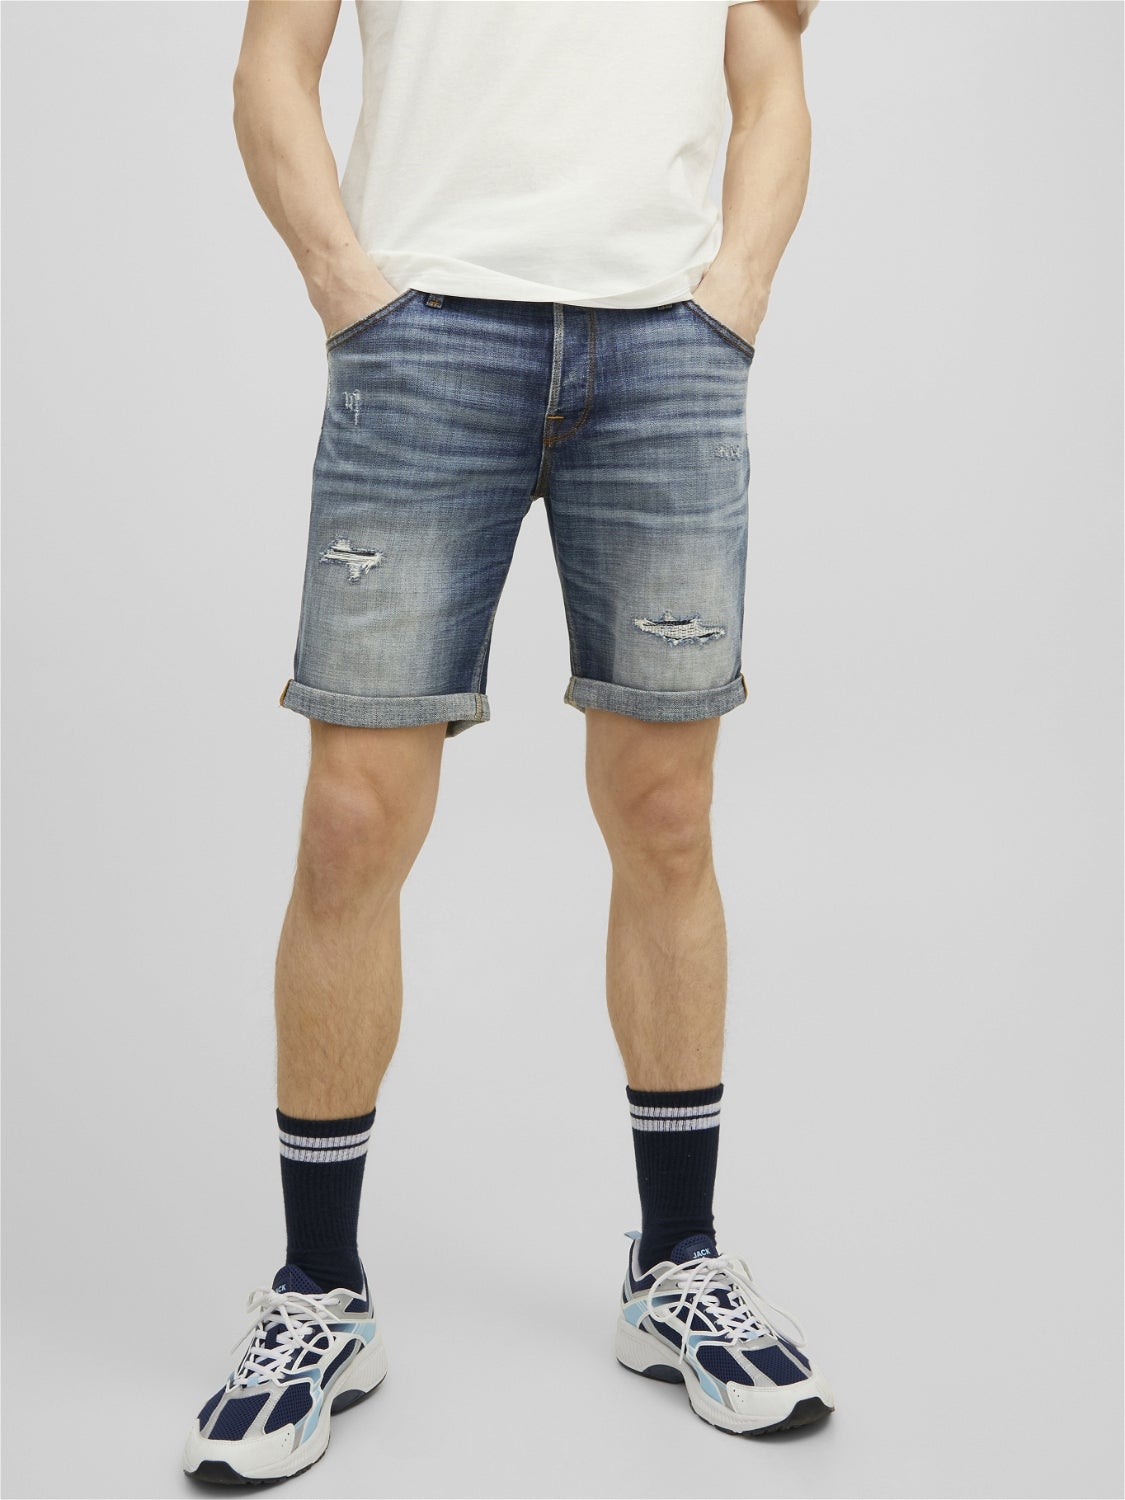 discount 57% Blue L MEN FASHION Jeans Basic Jack & Jones shorts jeans 